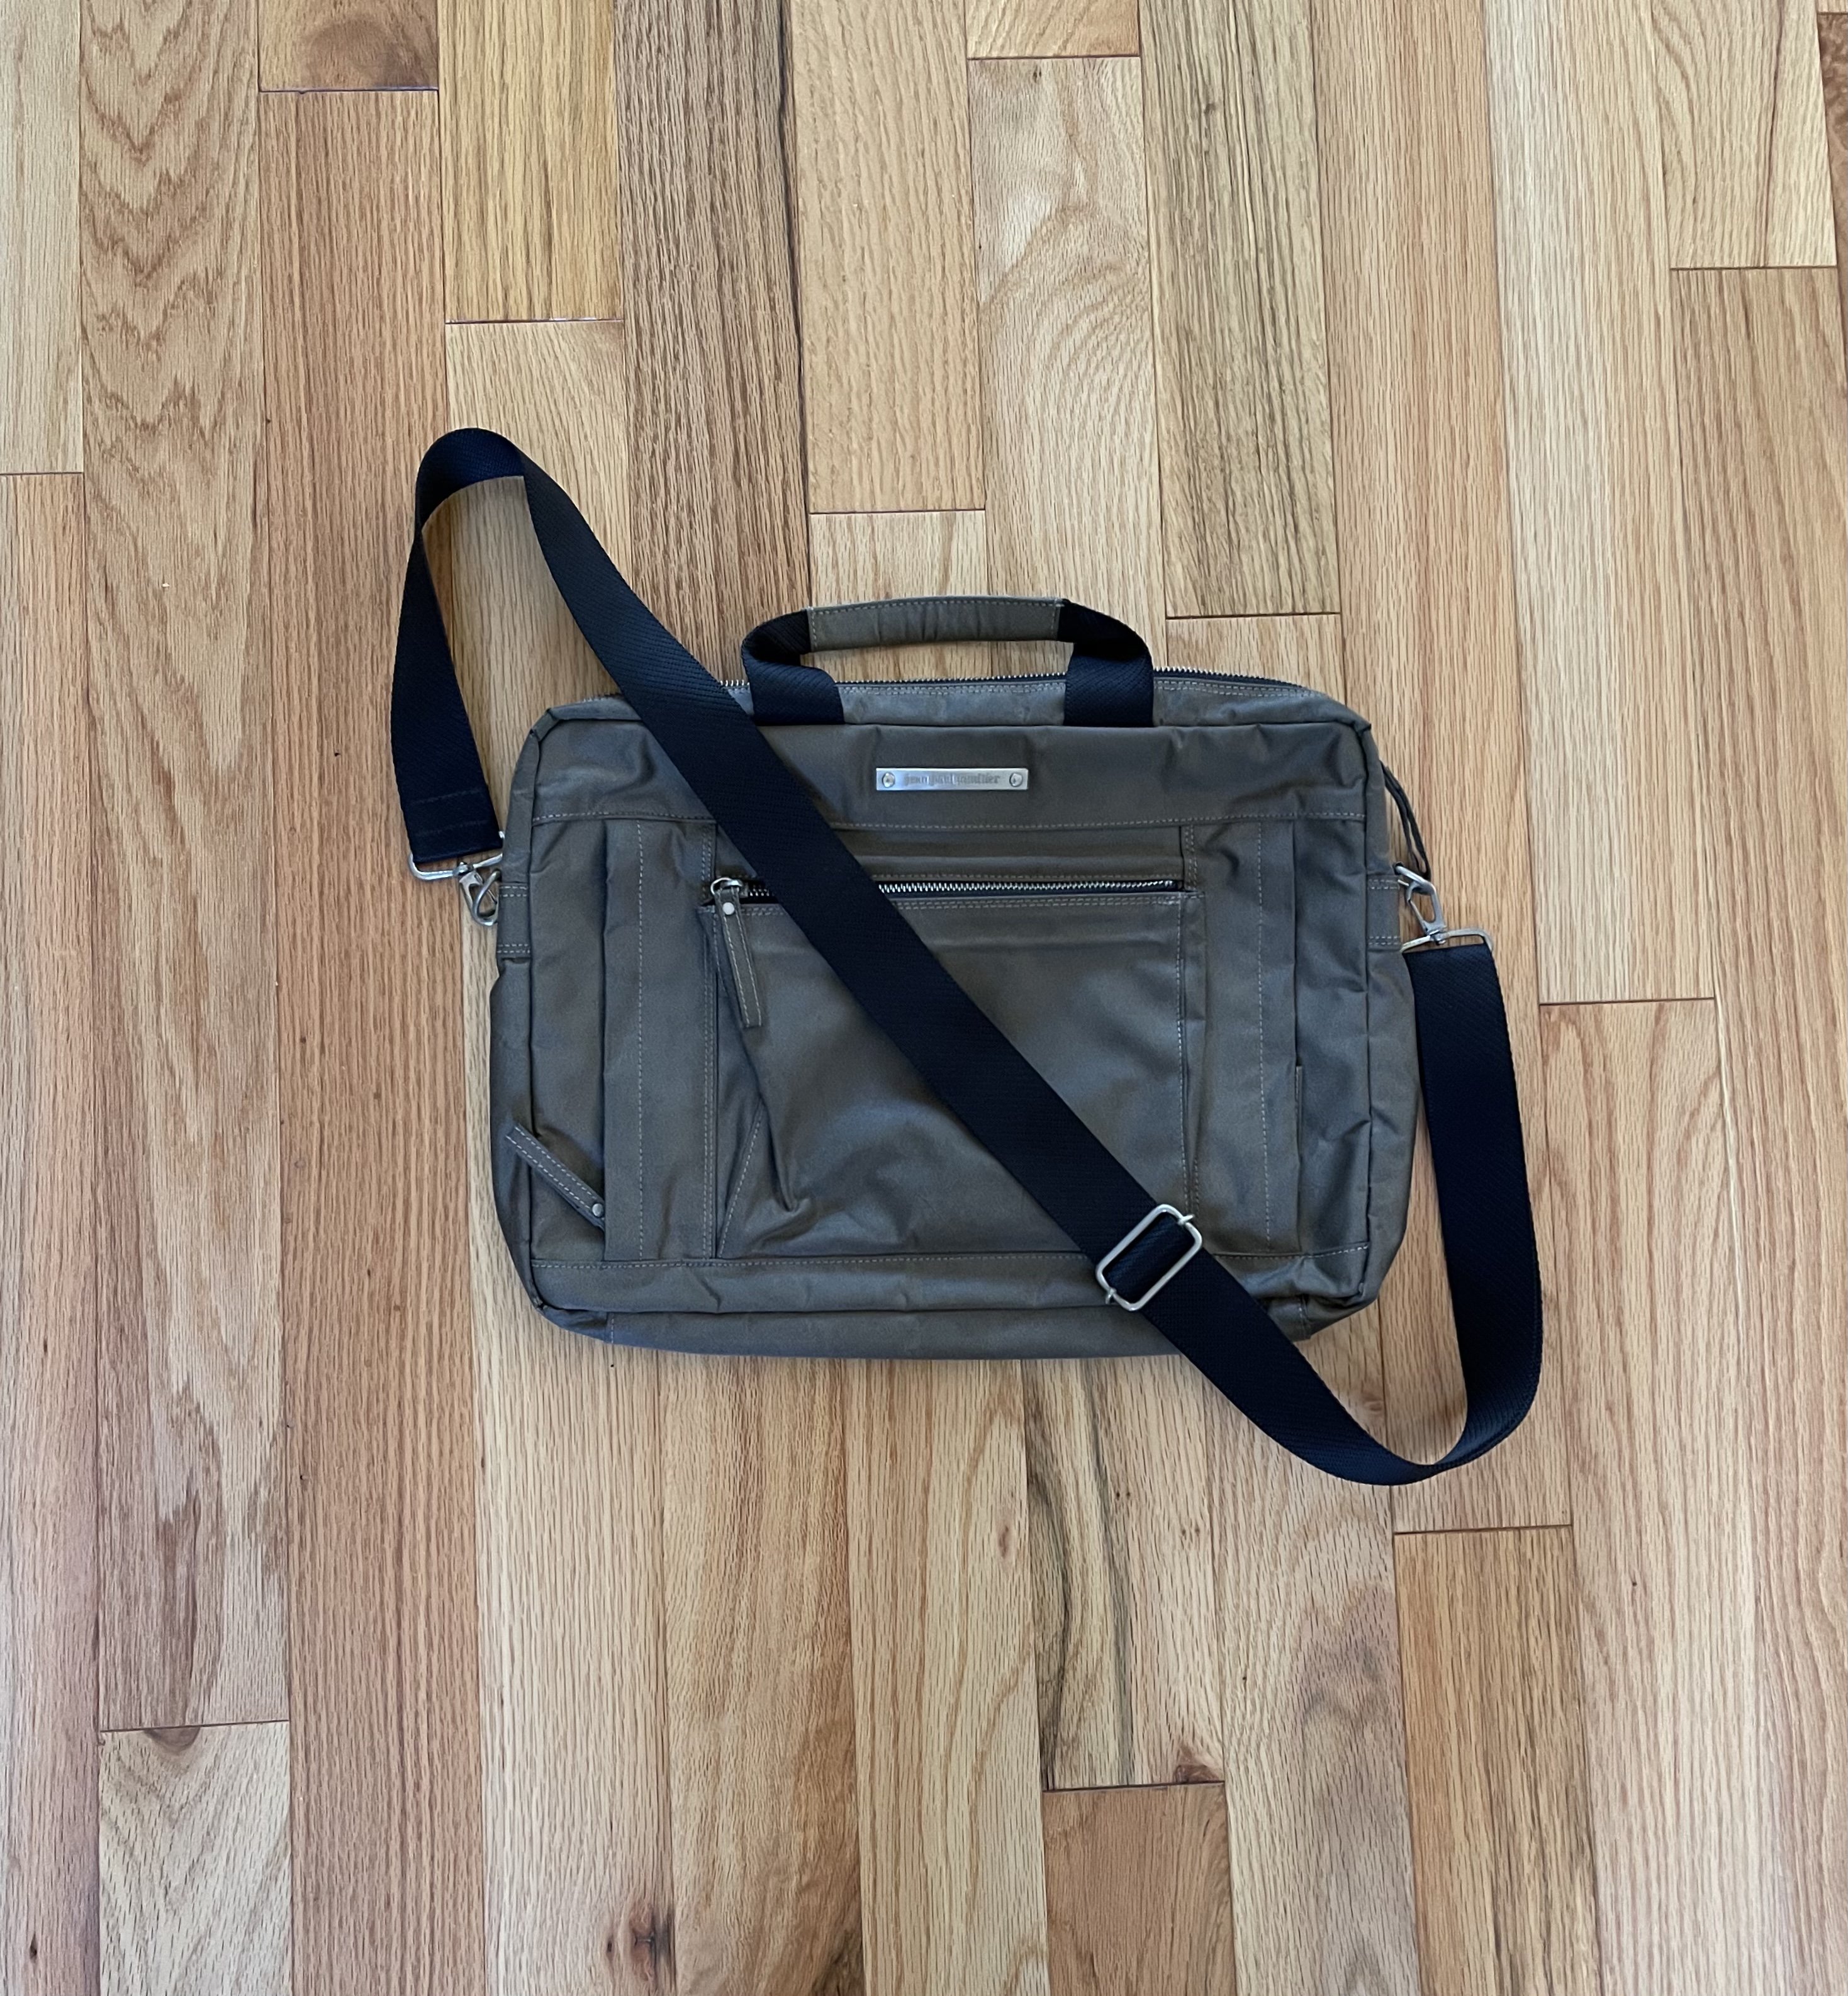 Green army bag | Reissue: Buy & Sell Designer, Streetwear & Vintage ...